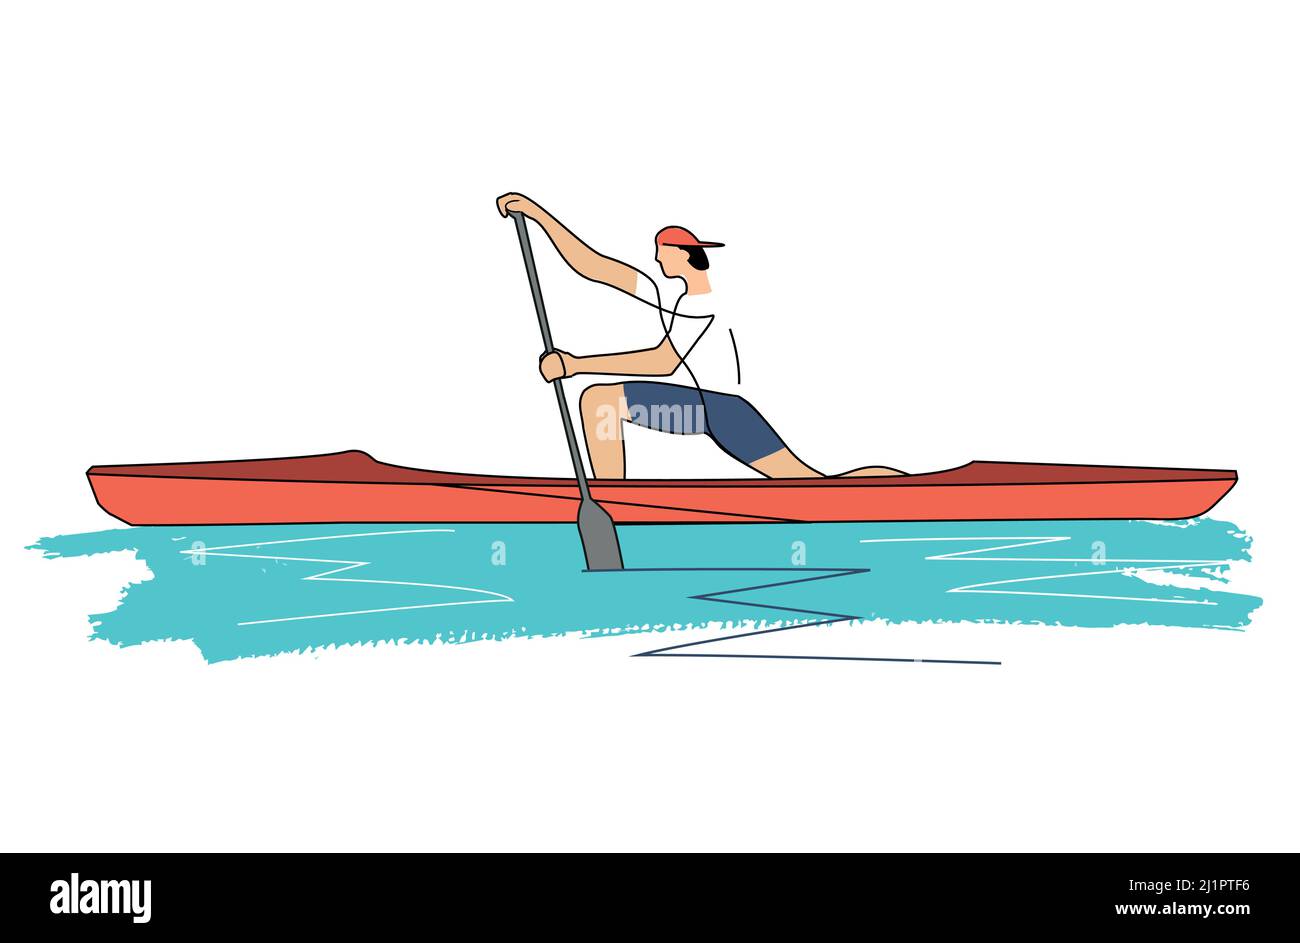 Canoe sprint, atleta uomo in piedi in appoggio su un ginocchio in canoa singola. Illustrazione stilizzata della linea di arte della canoa. Isolato su sfondo bianco. Illustrazione Vettoriale